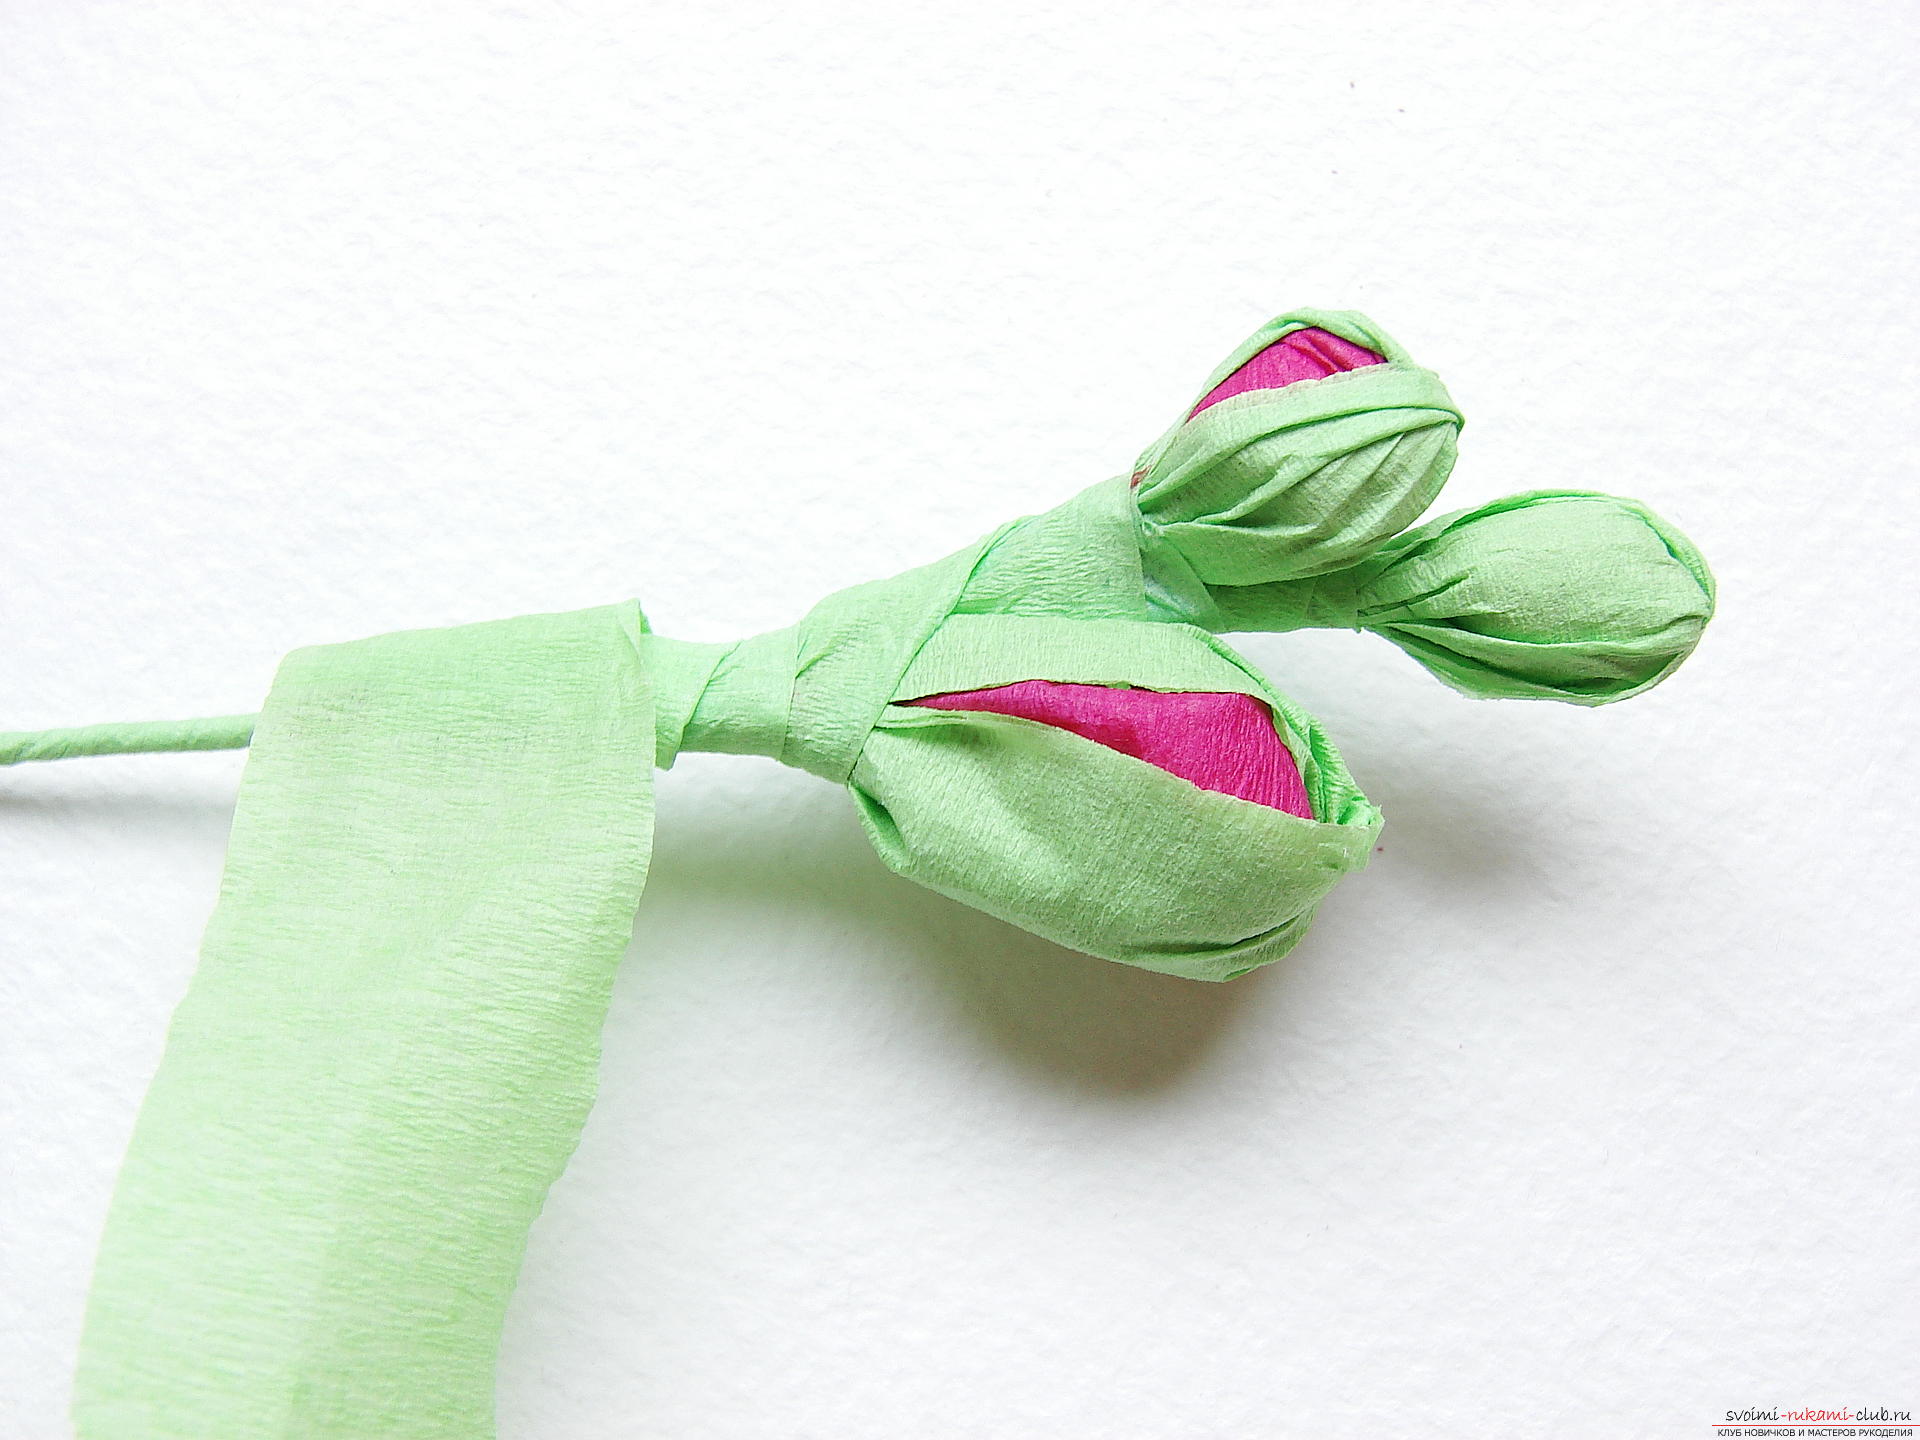 Этот мастер-класс научит как сделать цветы гладиолусы из бумаги своими руками.. Фото №24